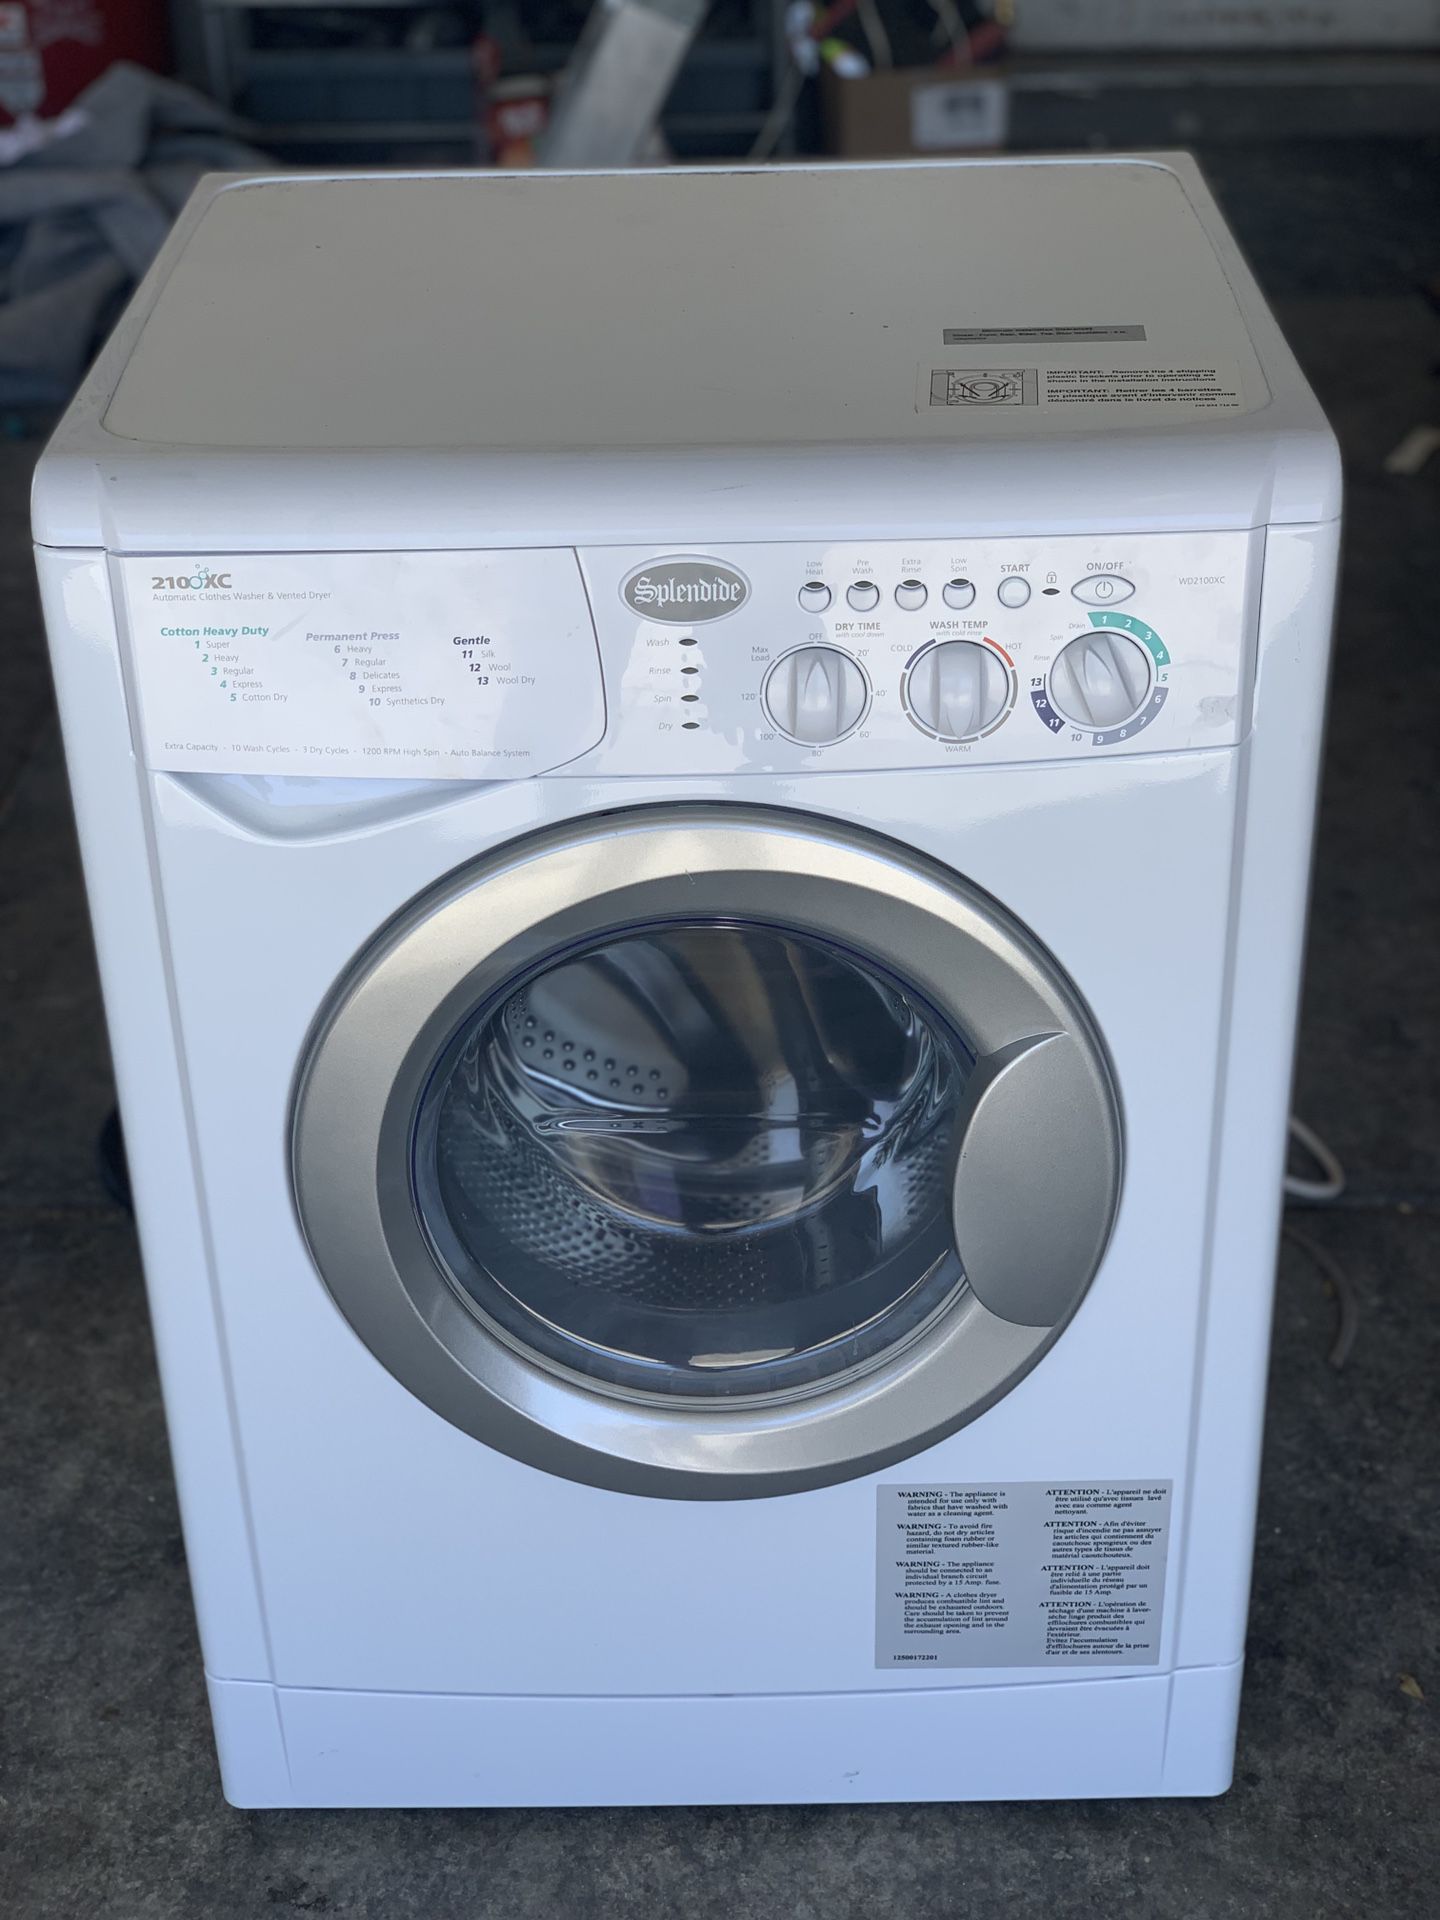 Splendide 2100XC Washer Dryer Combo - White